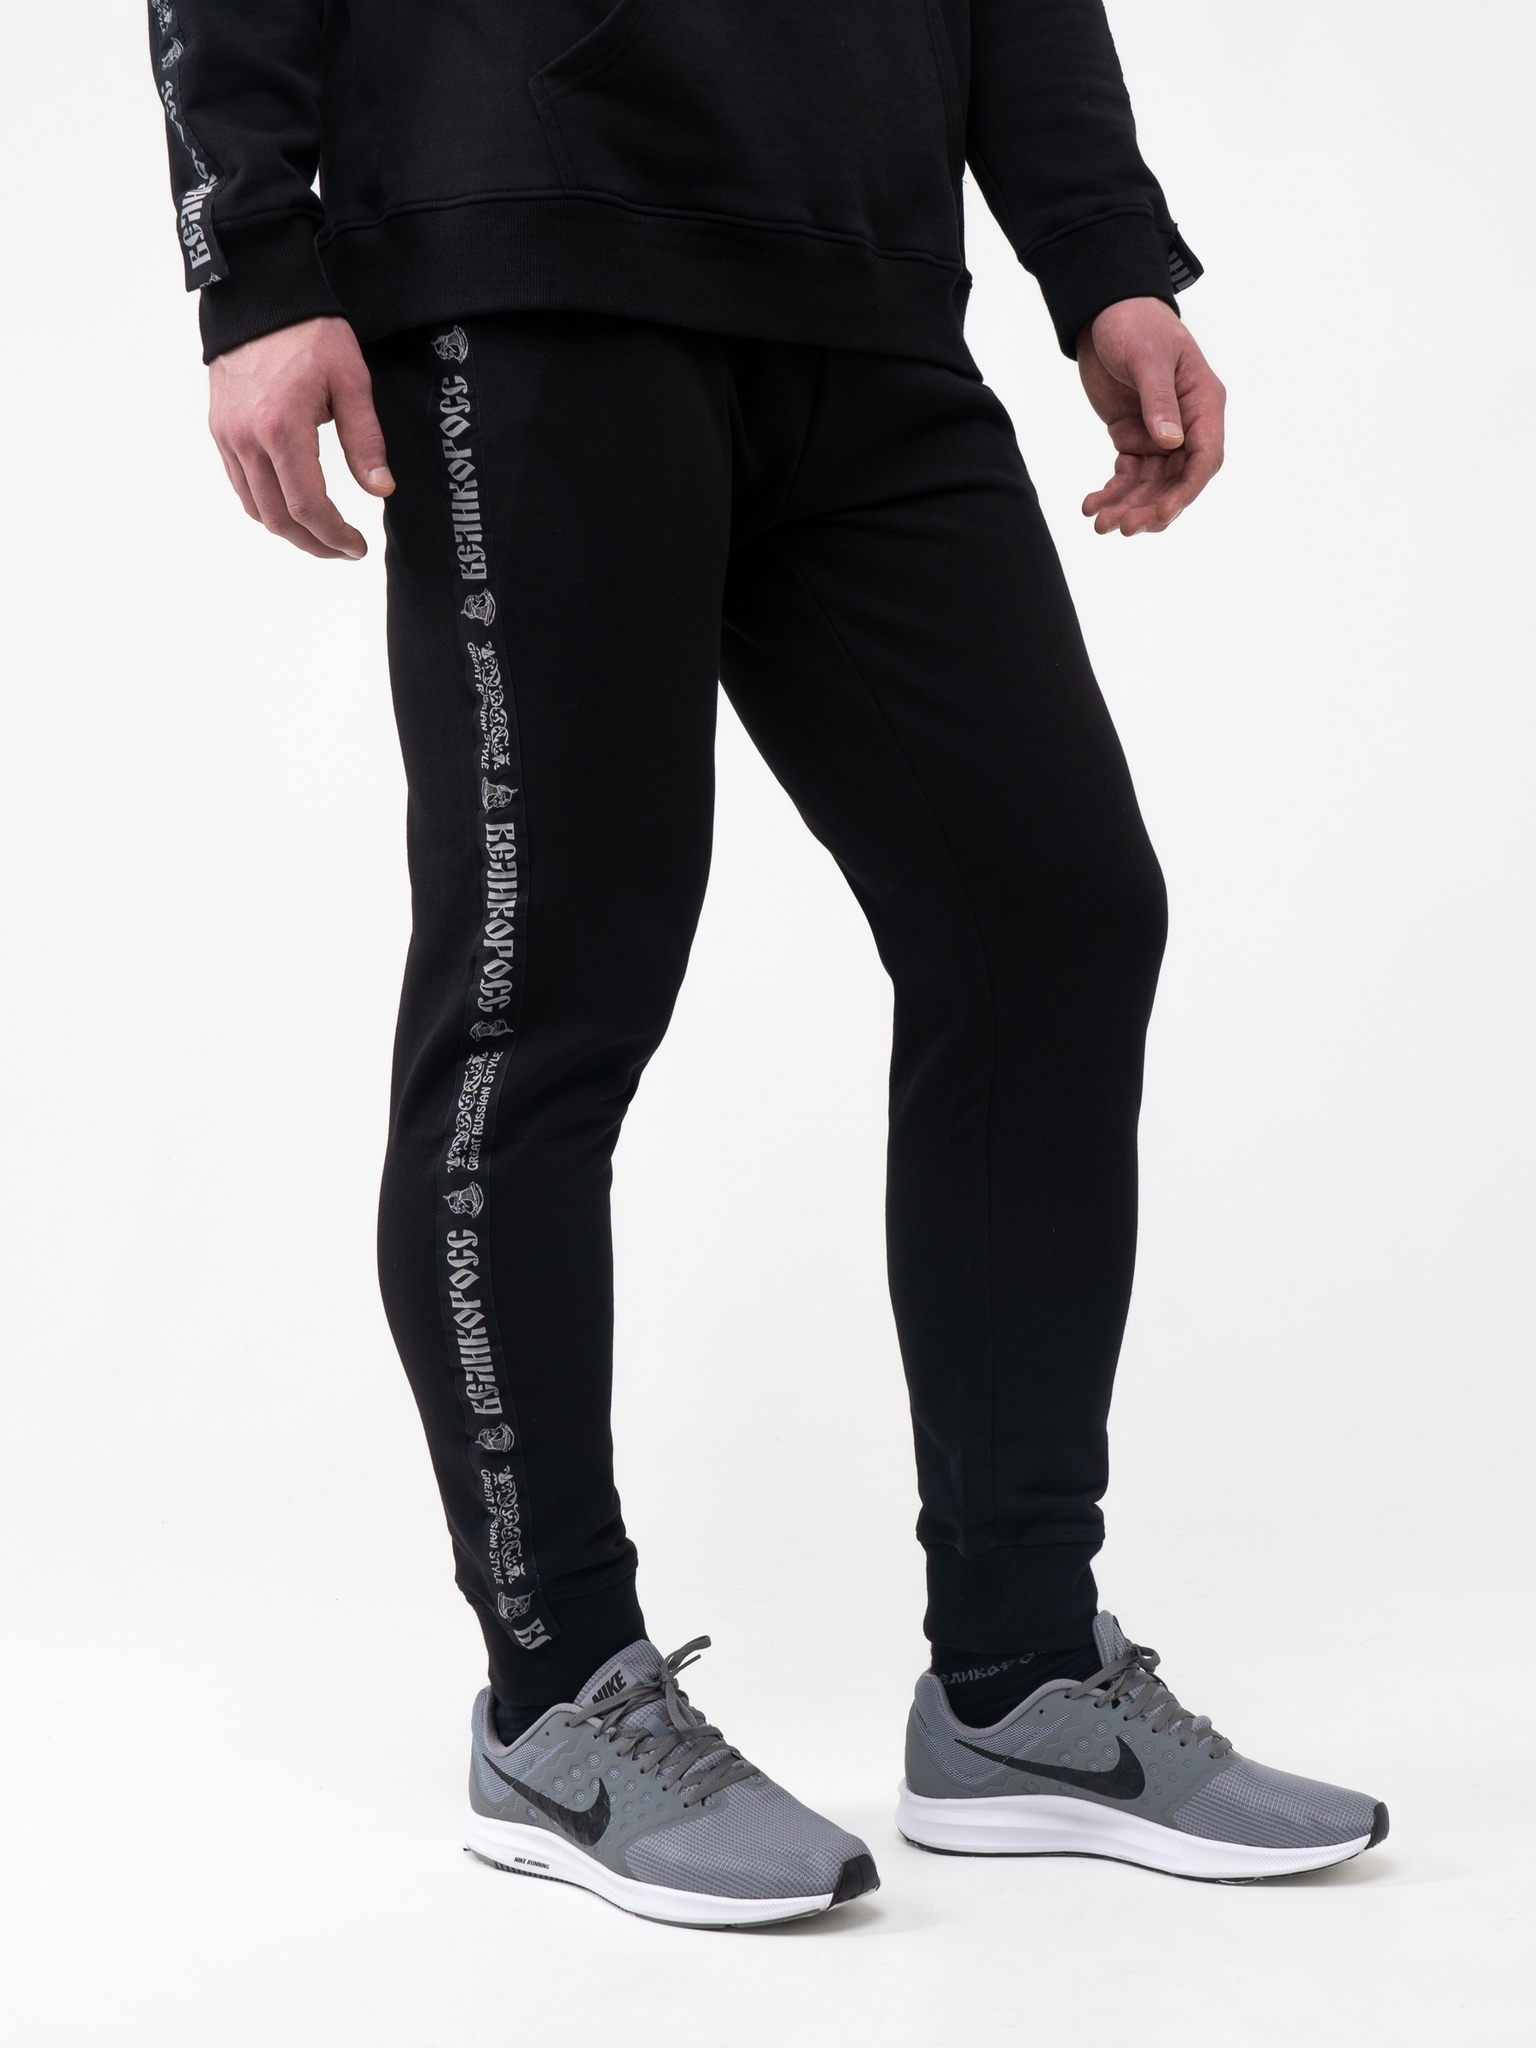 Спортивные брюки мужские Великоросс BM черные 56 RU